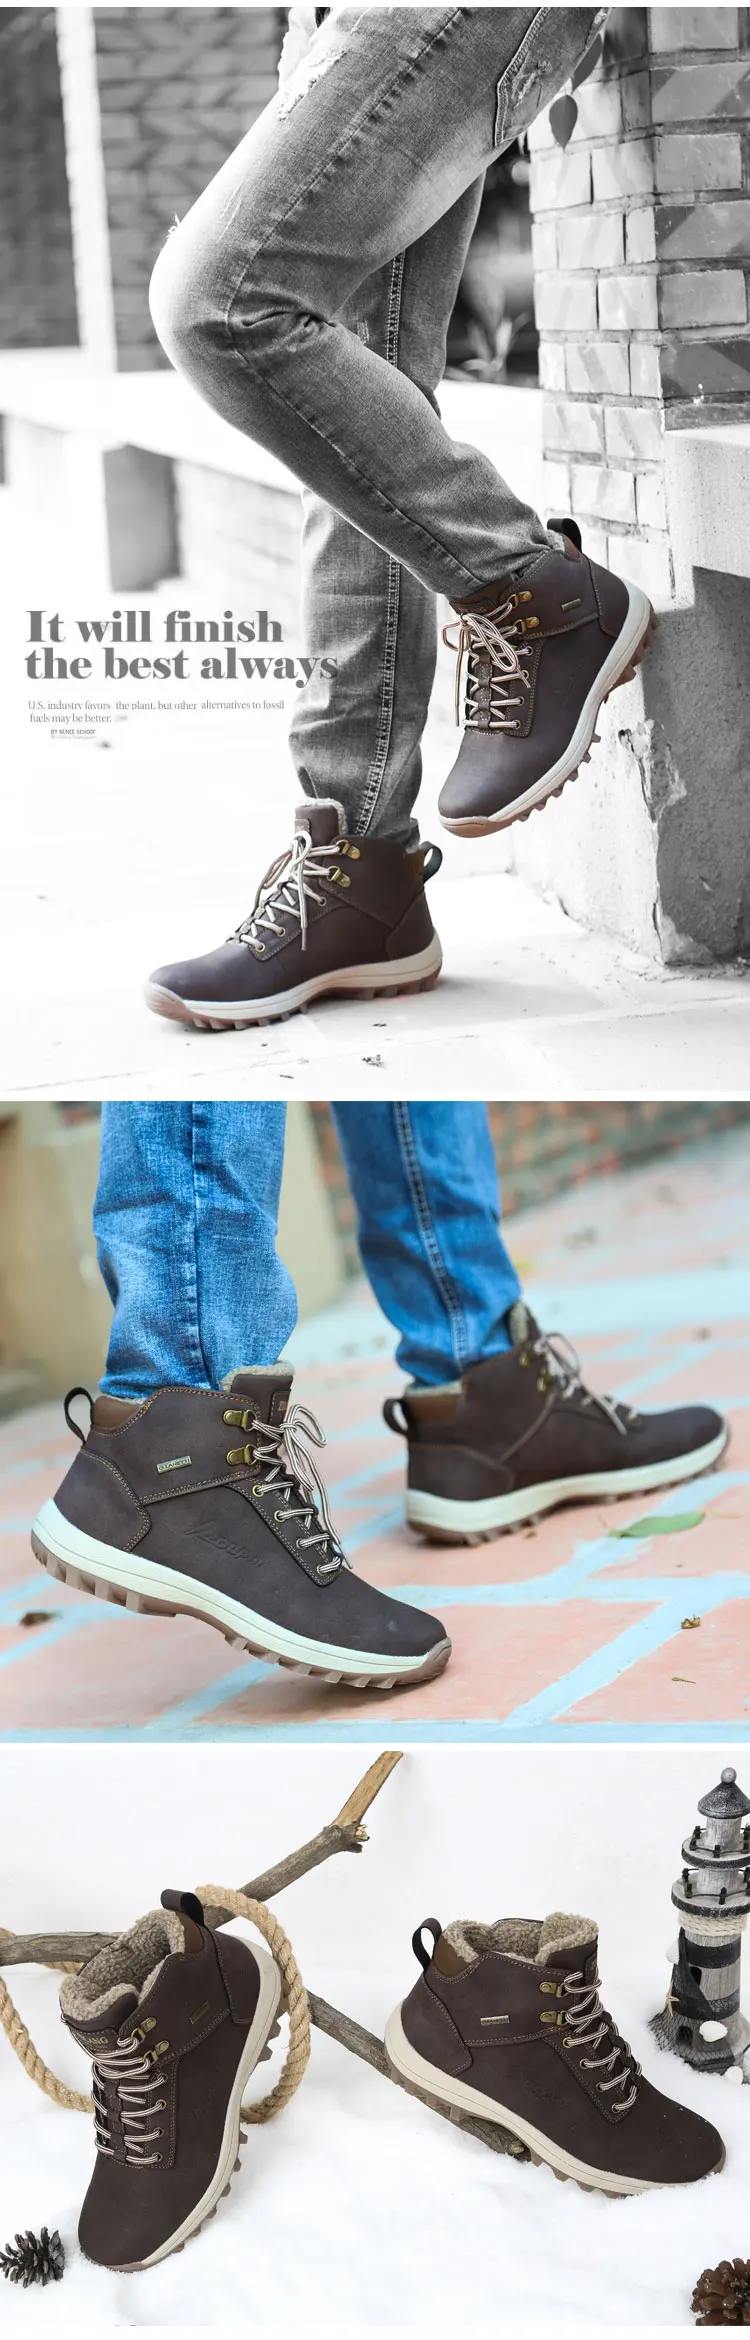 ALEADER водонепроницаемые мужские рабочие ботинки прочная зимняя обувь нескользящие повседневные мужские защитные сапоги зимние уличные Прогулочные кроссовки мужские